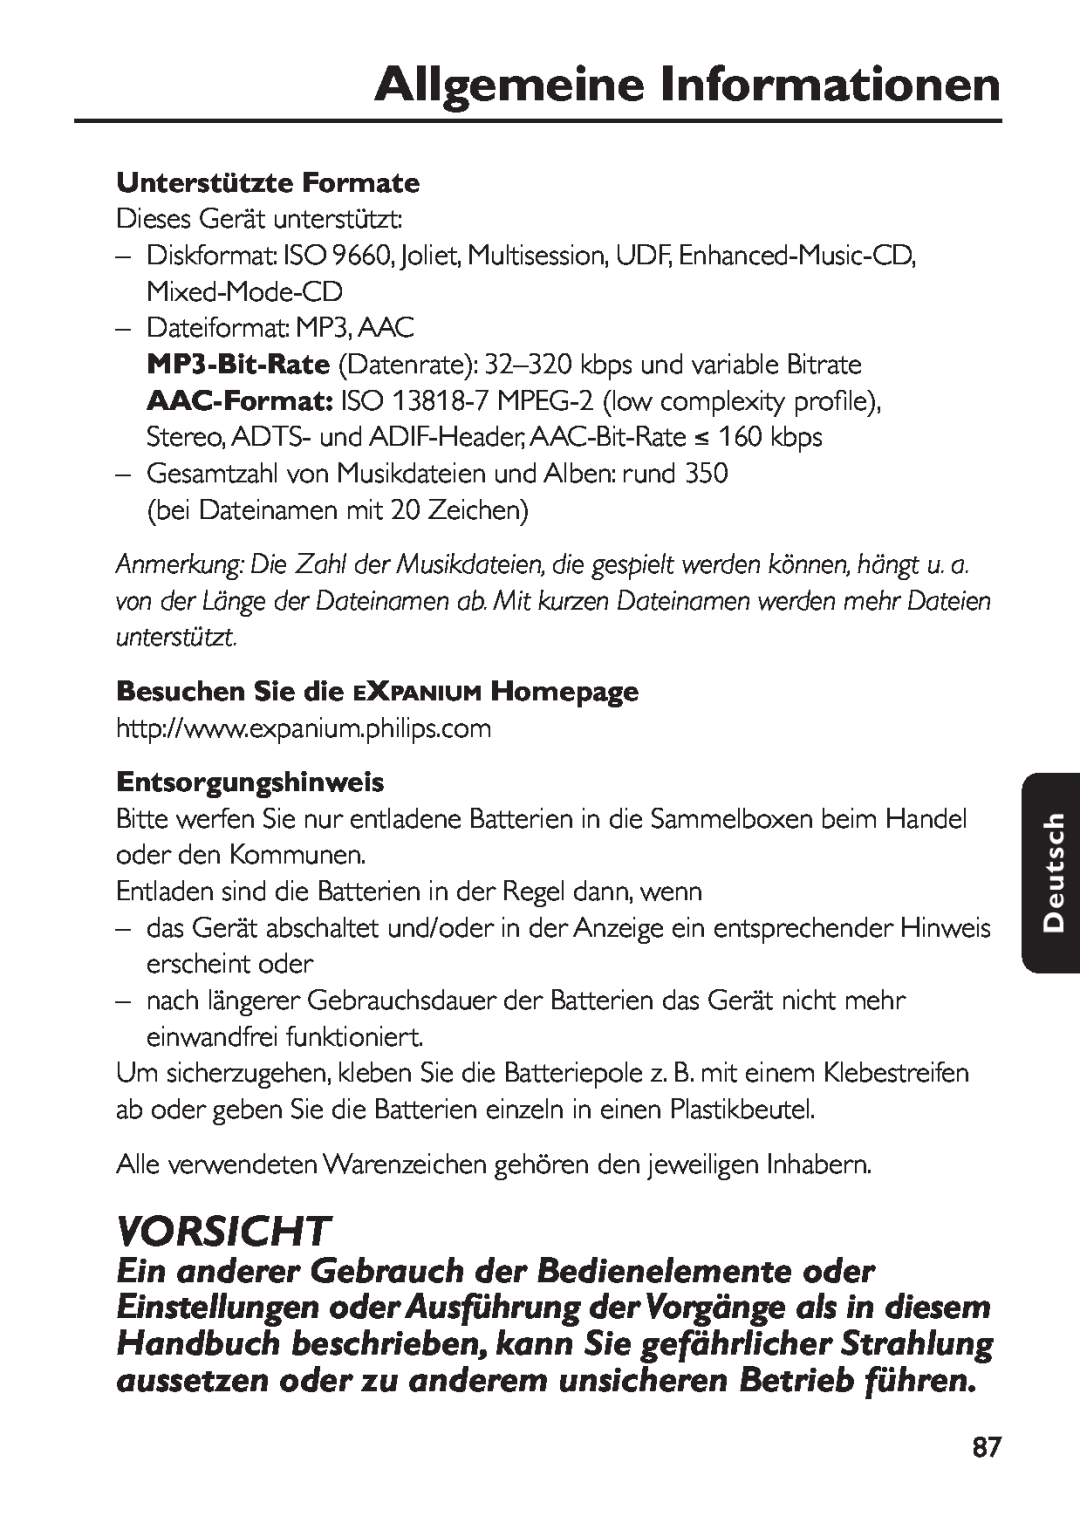 Philips EXP 501/00 manual Vorsicht, Unterstützte Formate, Besuchen Sie die EXPANIUM Homepage, Entsorgungshinweis, Deutsch 